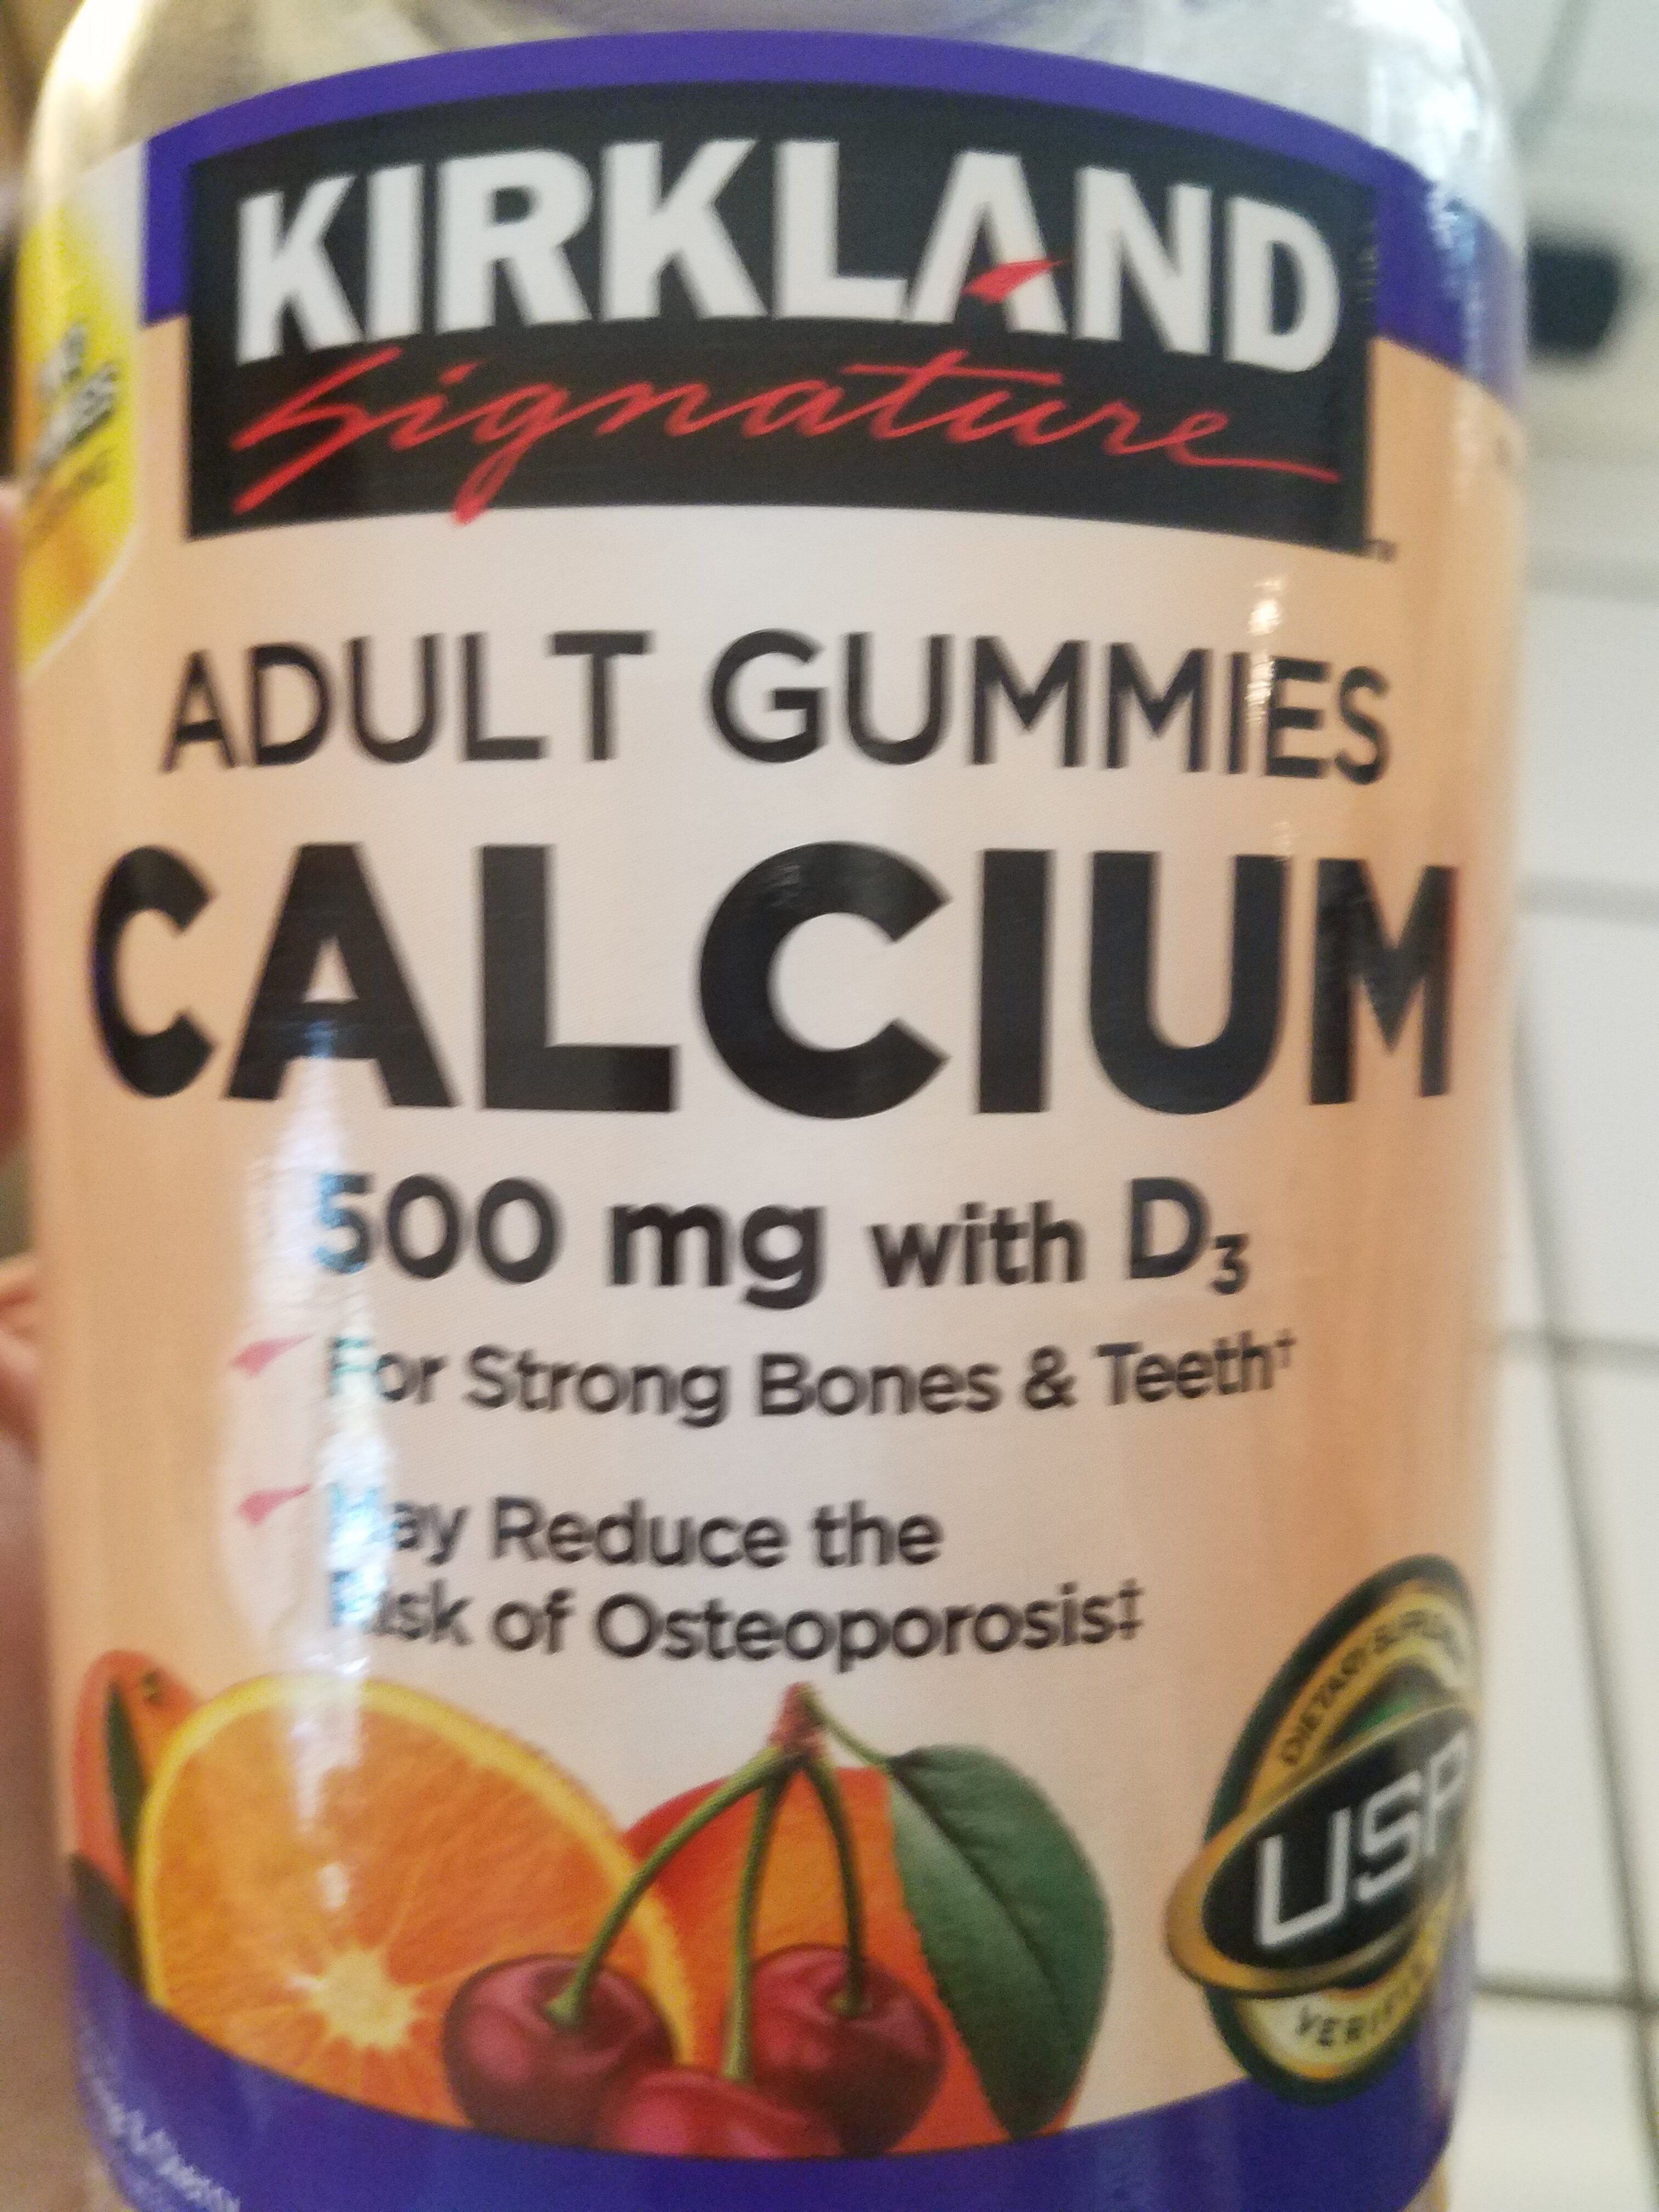 Calcium Adult Gummies - Product